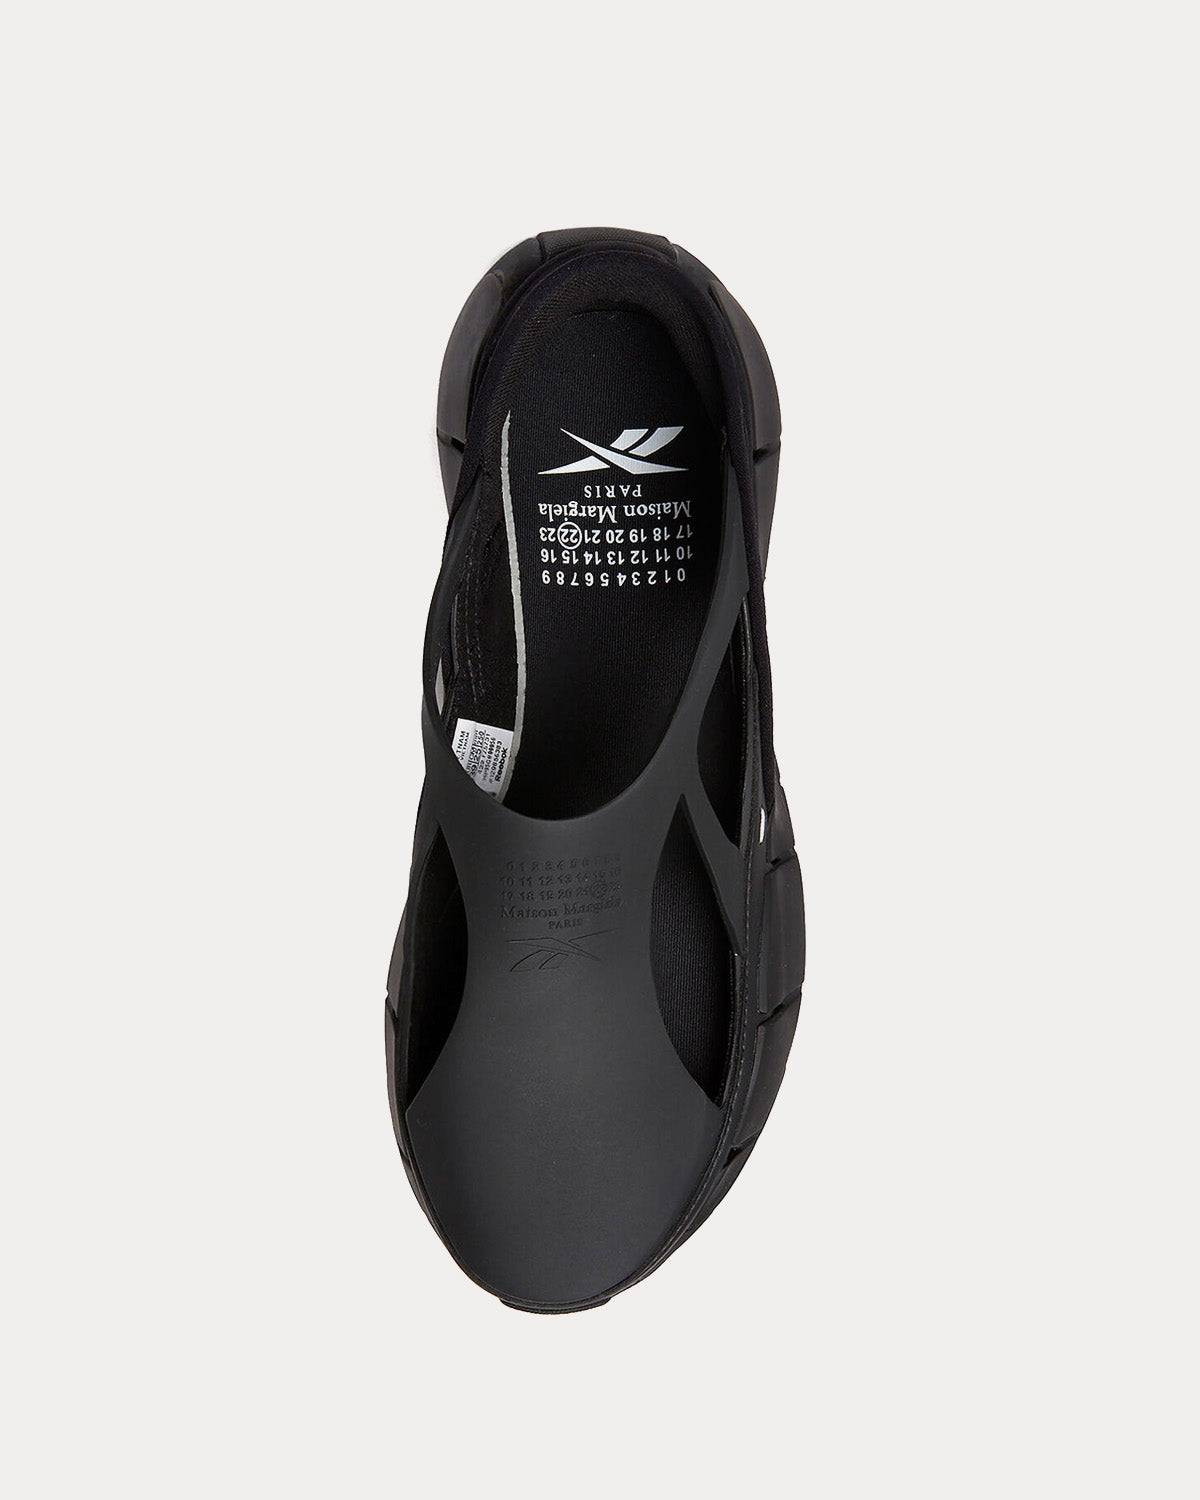 Reebok X Maison Margiela - Tier 1 Croafer Black Slip On Sneakers